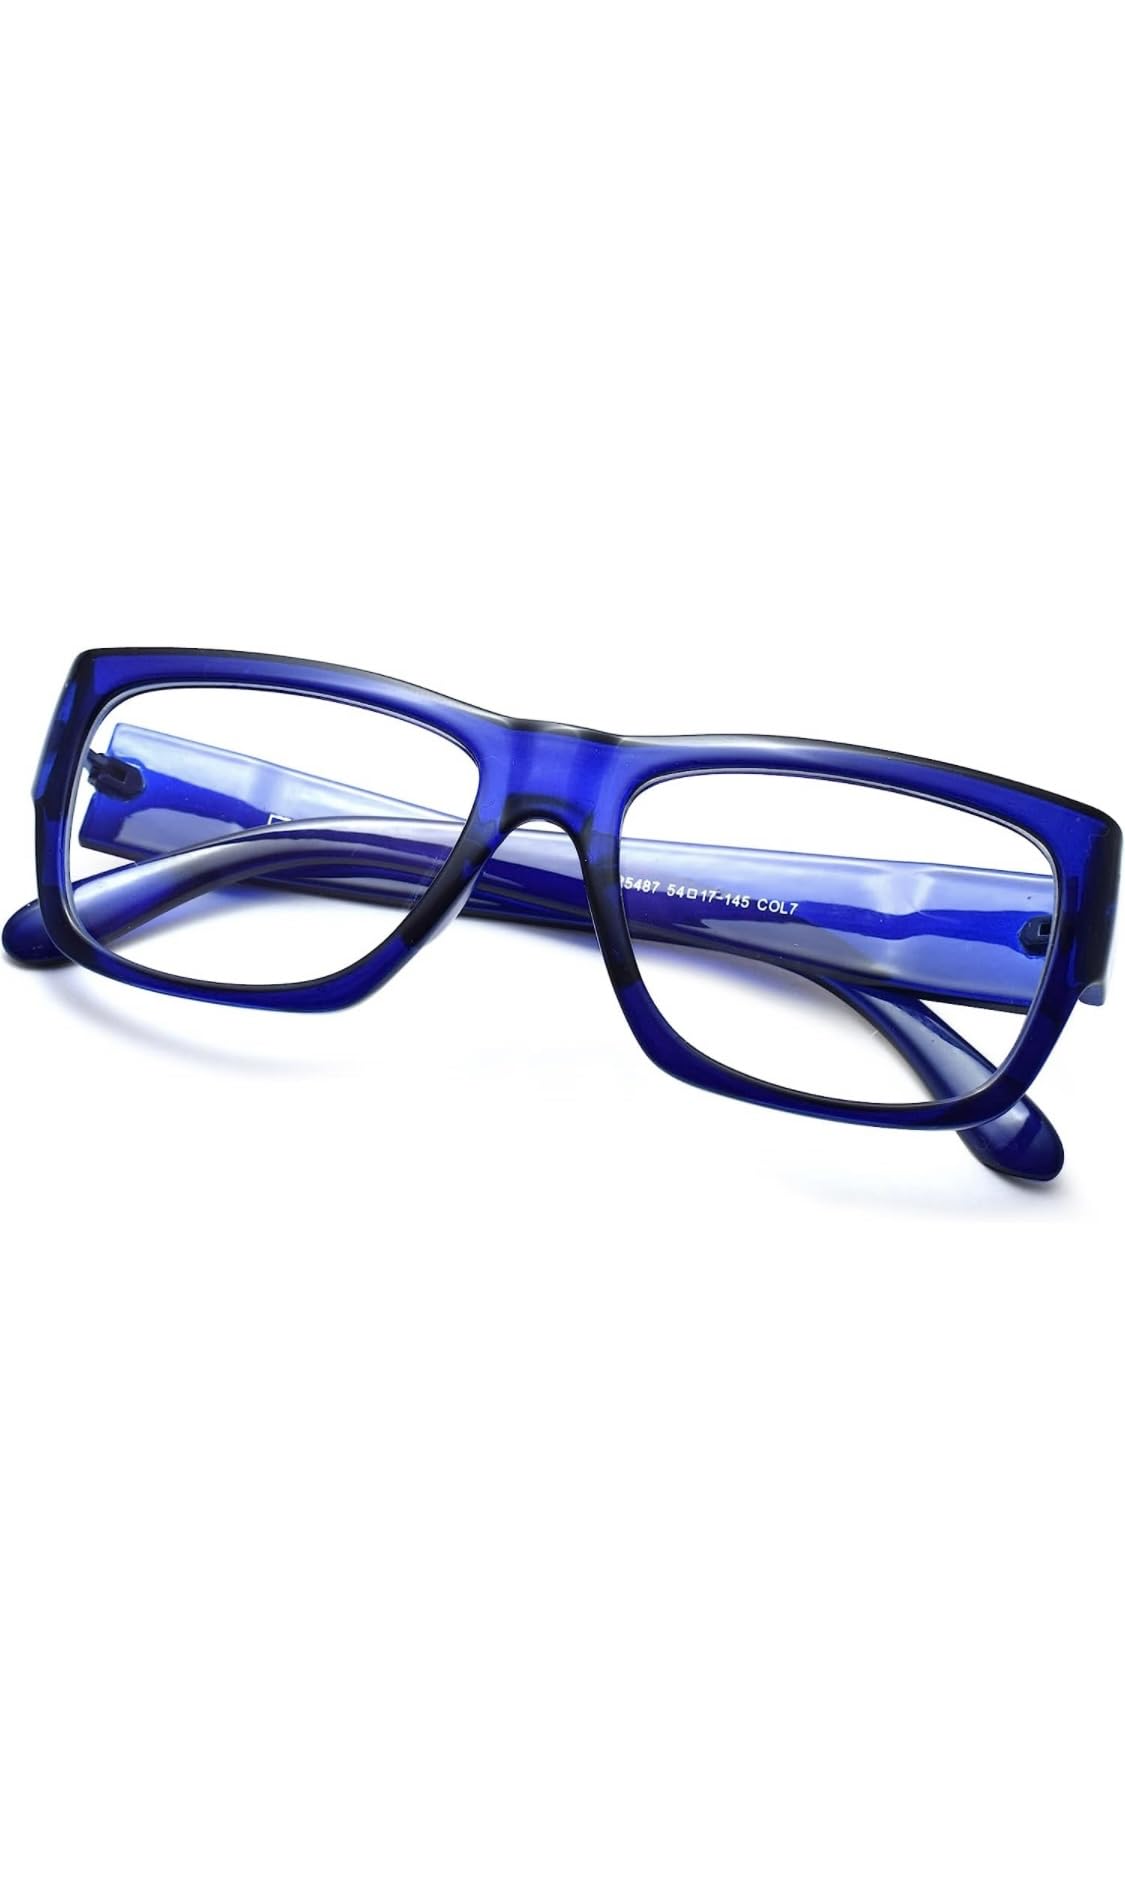 Jodykoes Thick Frame Unisex Anti Glare Eyeglasses Eyewear Spectacle (Blue)